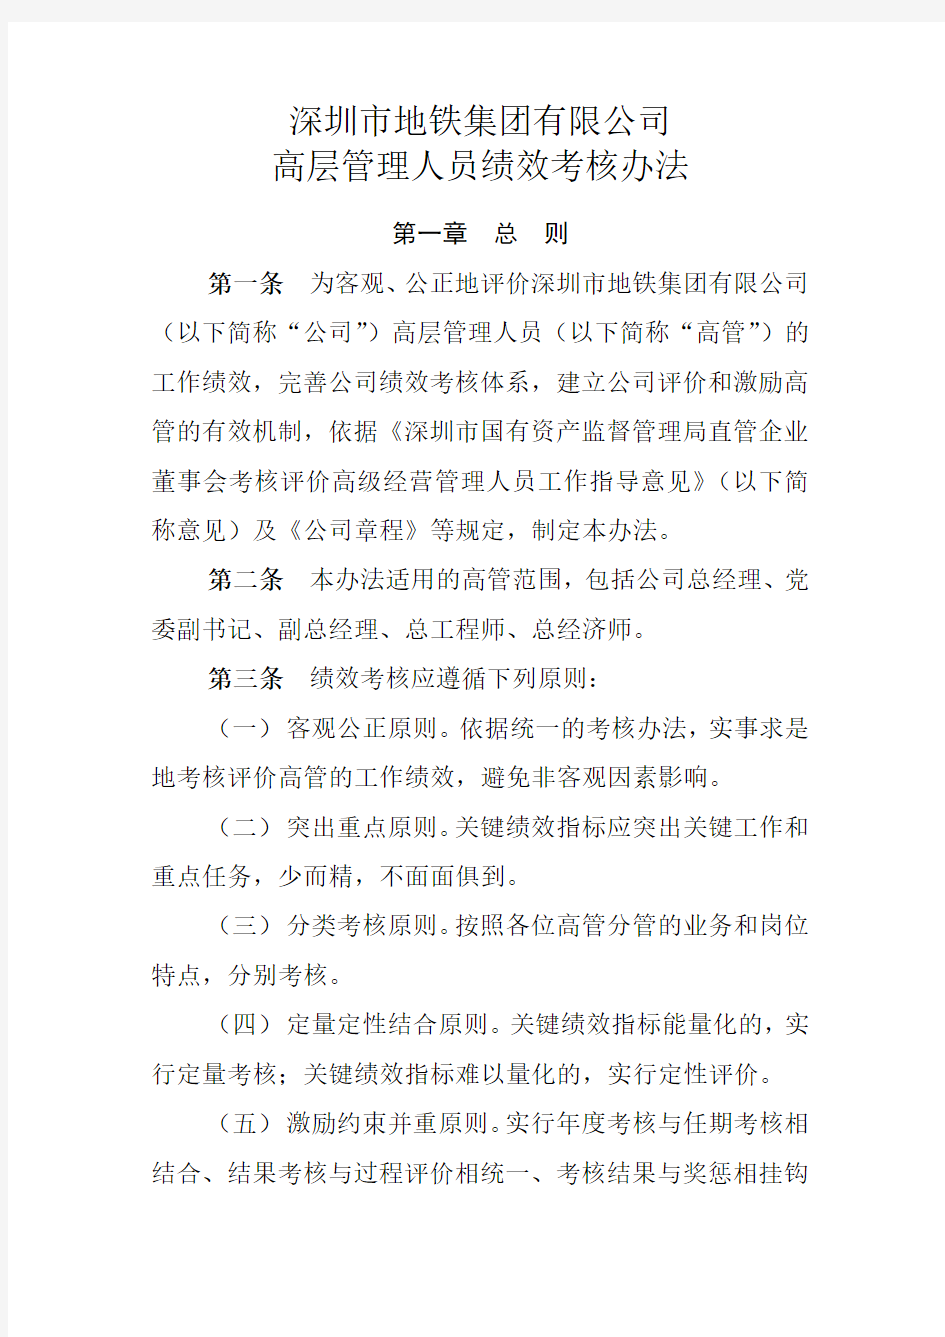 深圳市地铁集团有限公司高管绩效考核办法年修订